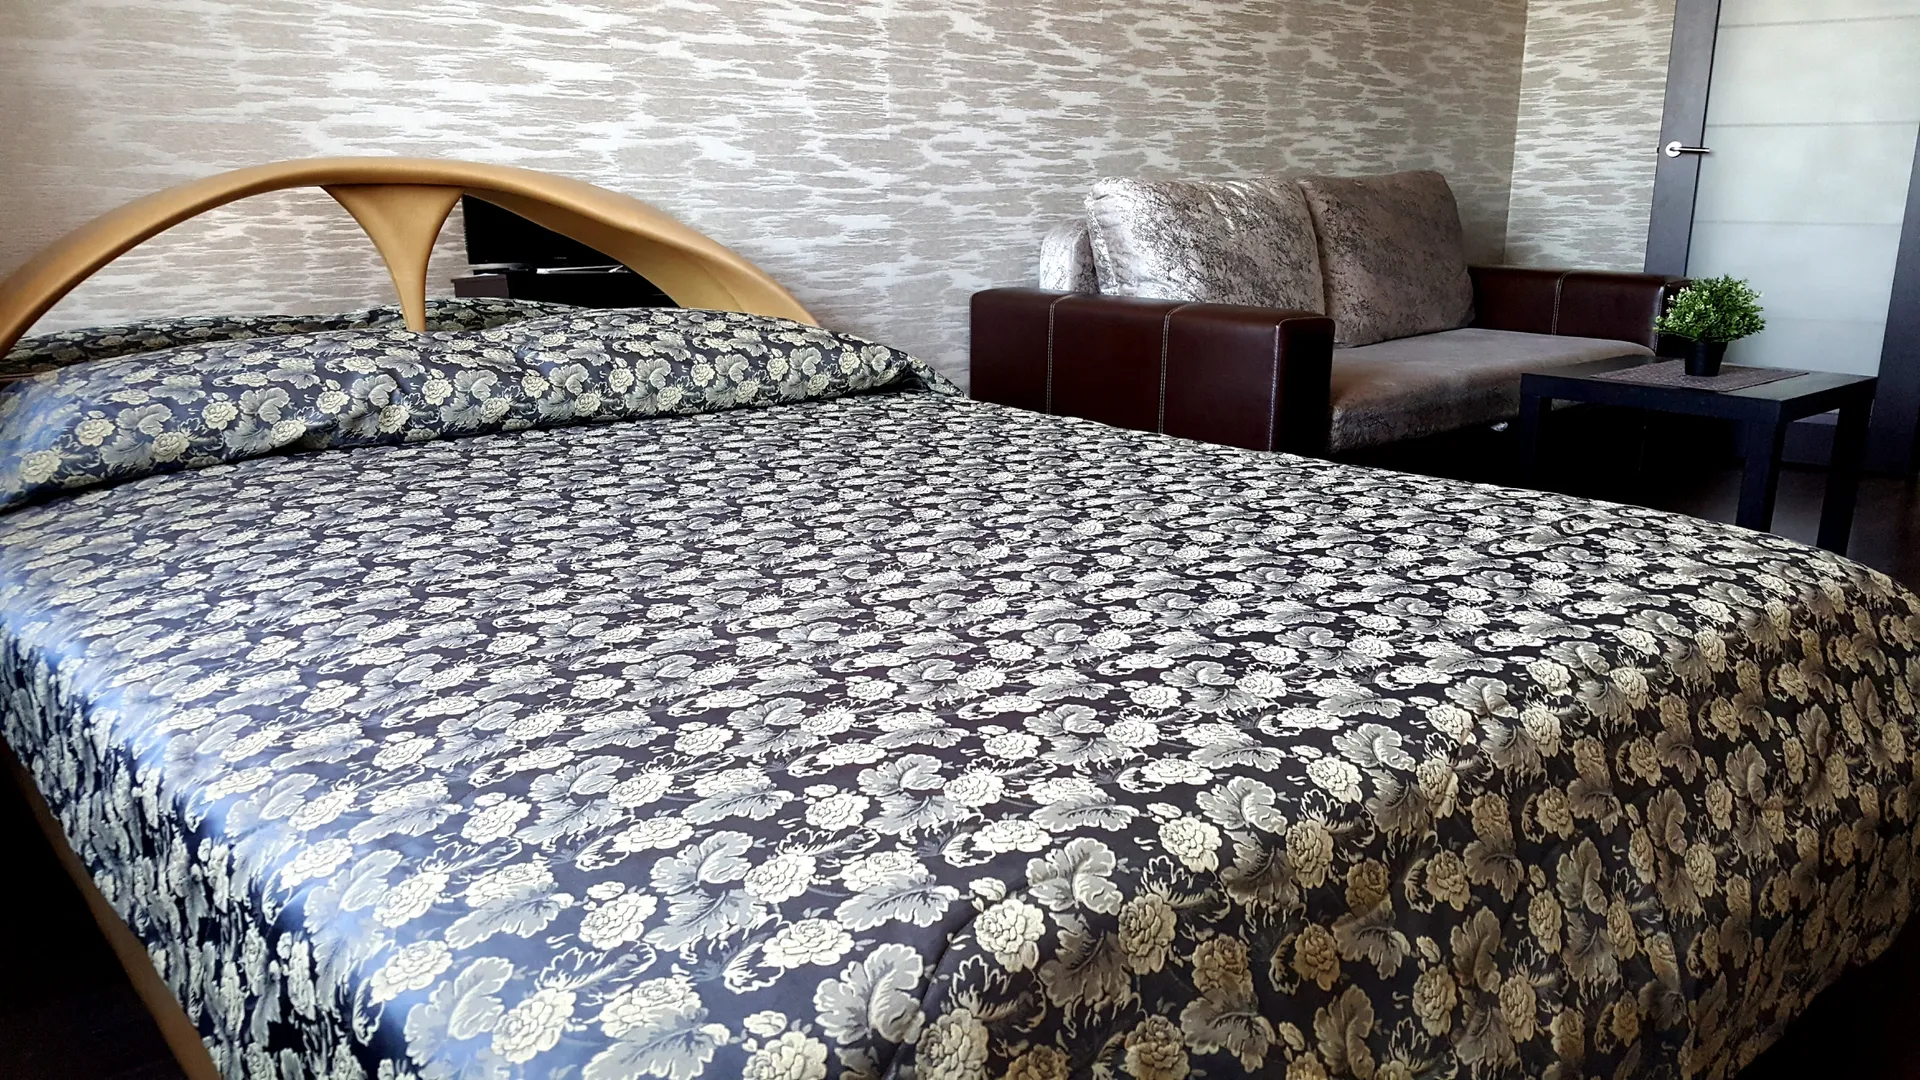 В комнате 4 спальных места: кровать и диван